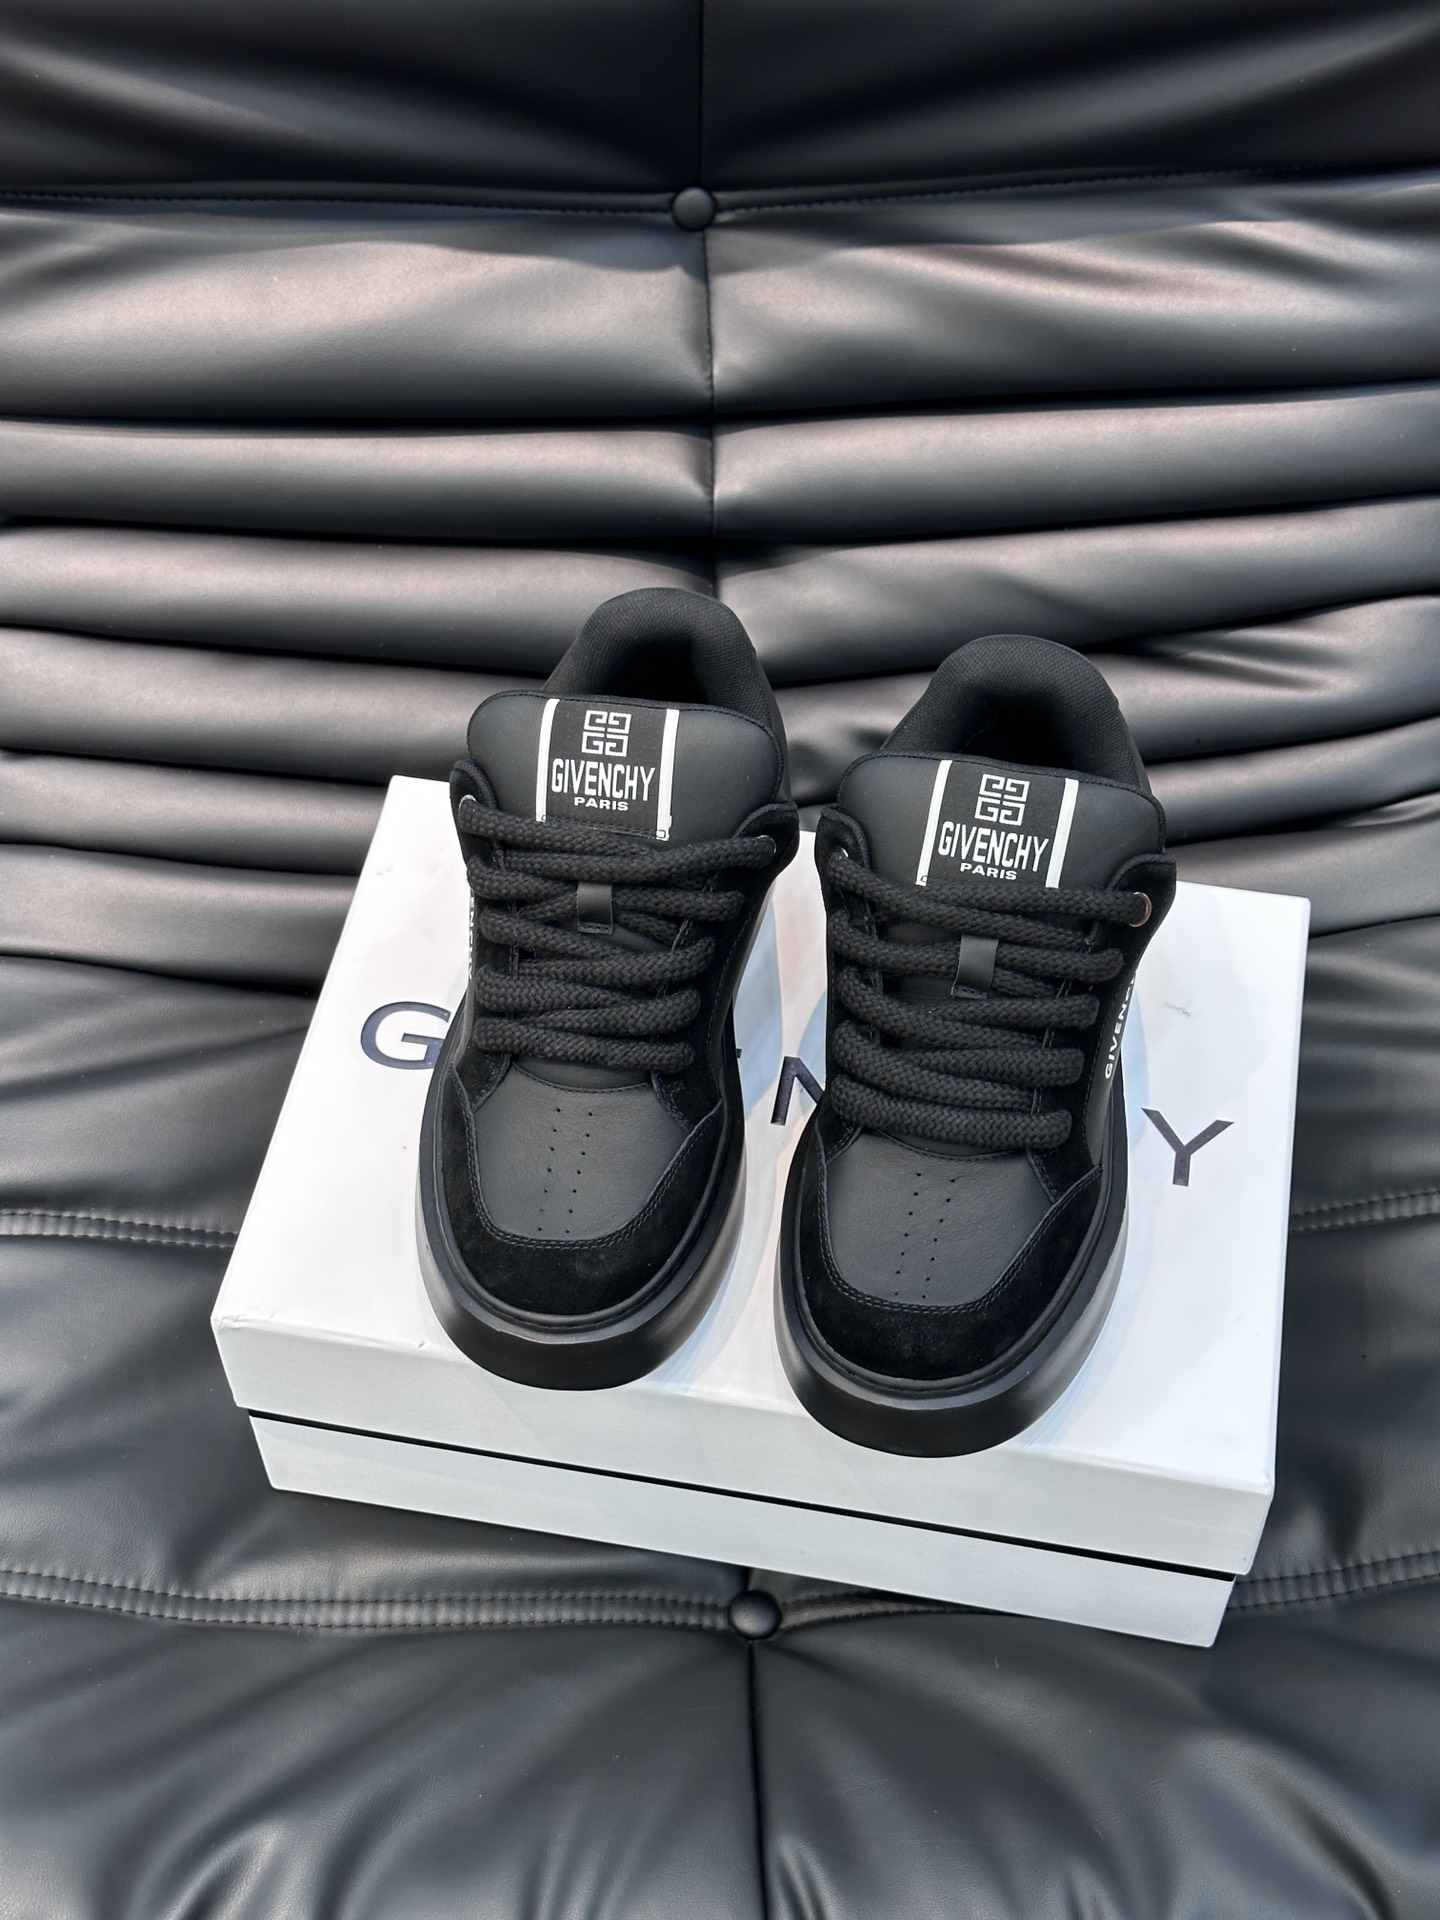 Givench*.纪梵希男士厚底休闲鞋采用进口小牛皮打造拼色设计鞋舌品牌logo装饰立体复合式拼接缝合！